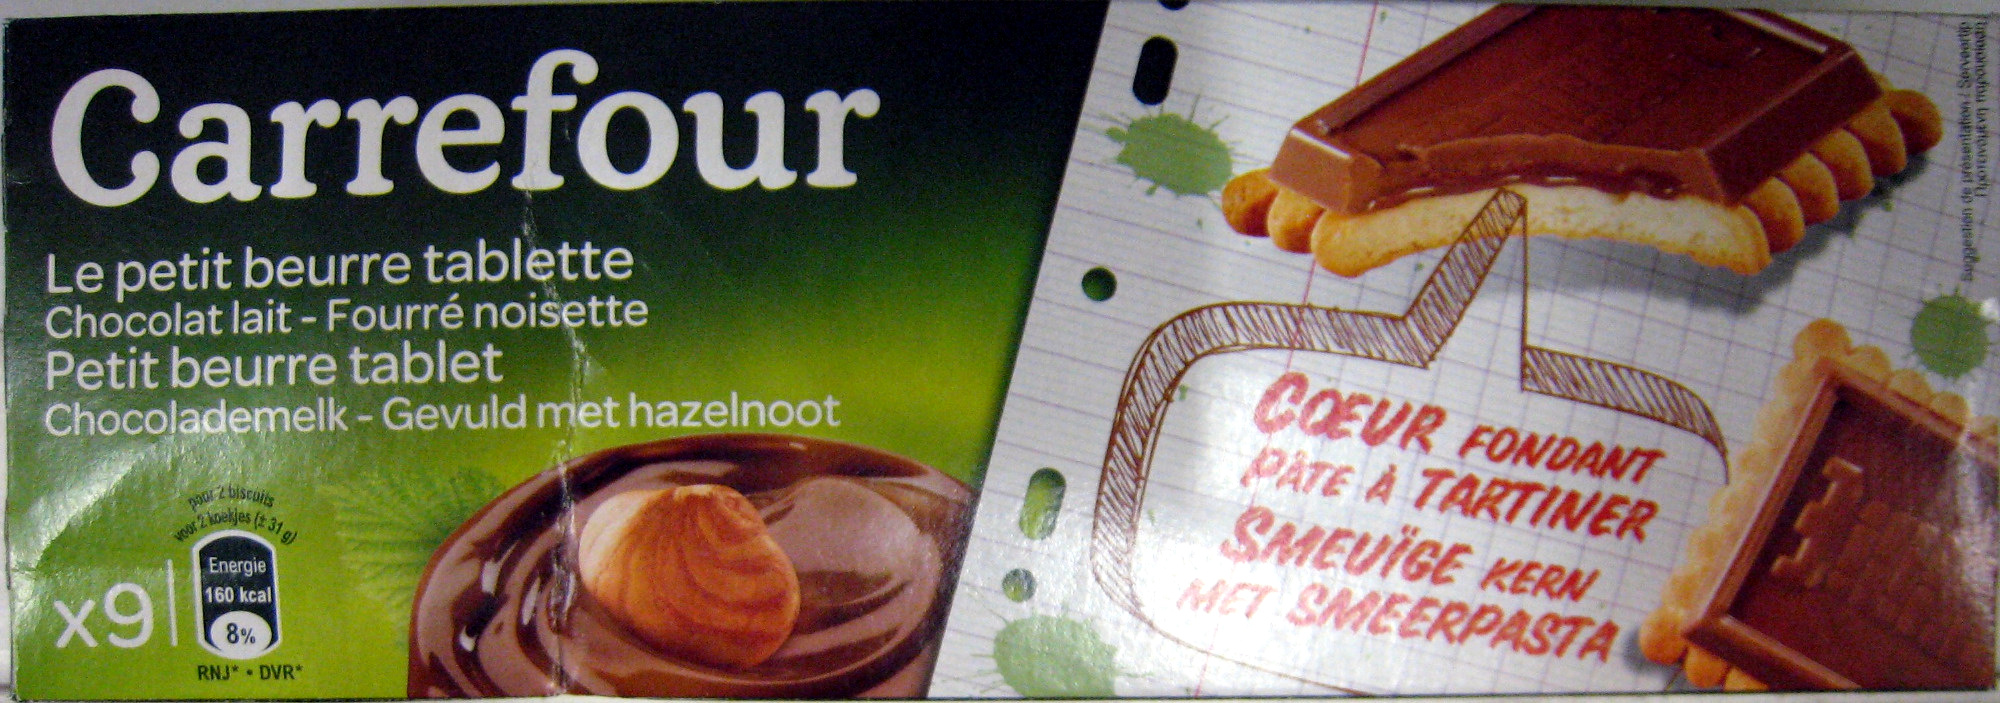 Le petit beurre tablette Chocolat lait - Fourré noisette (x 9) - Produit